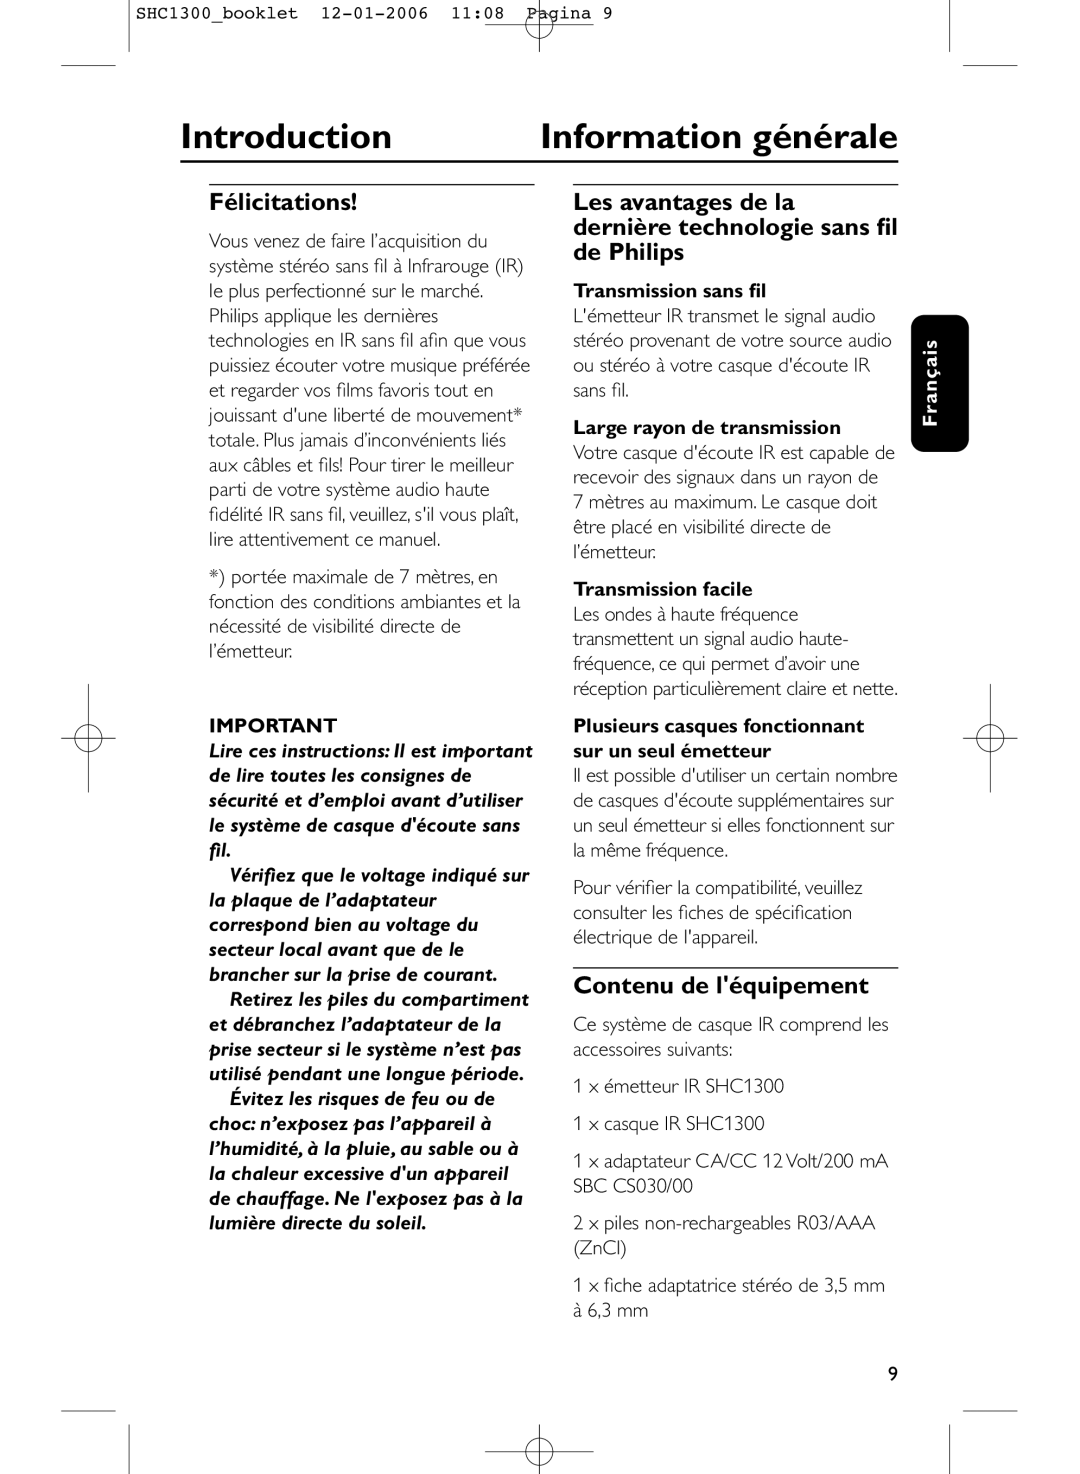 Philips SHC1300 manual Introduction Information générale, Félicitations, Contenu de léquipement 